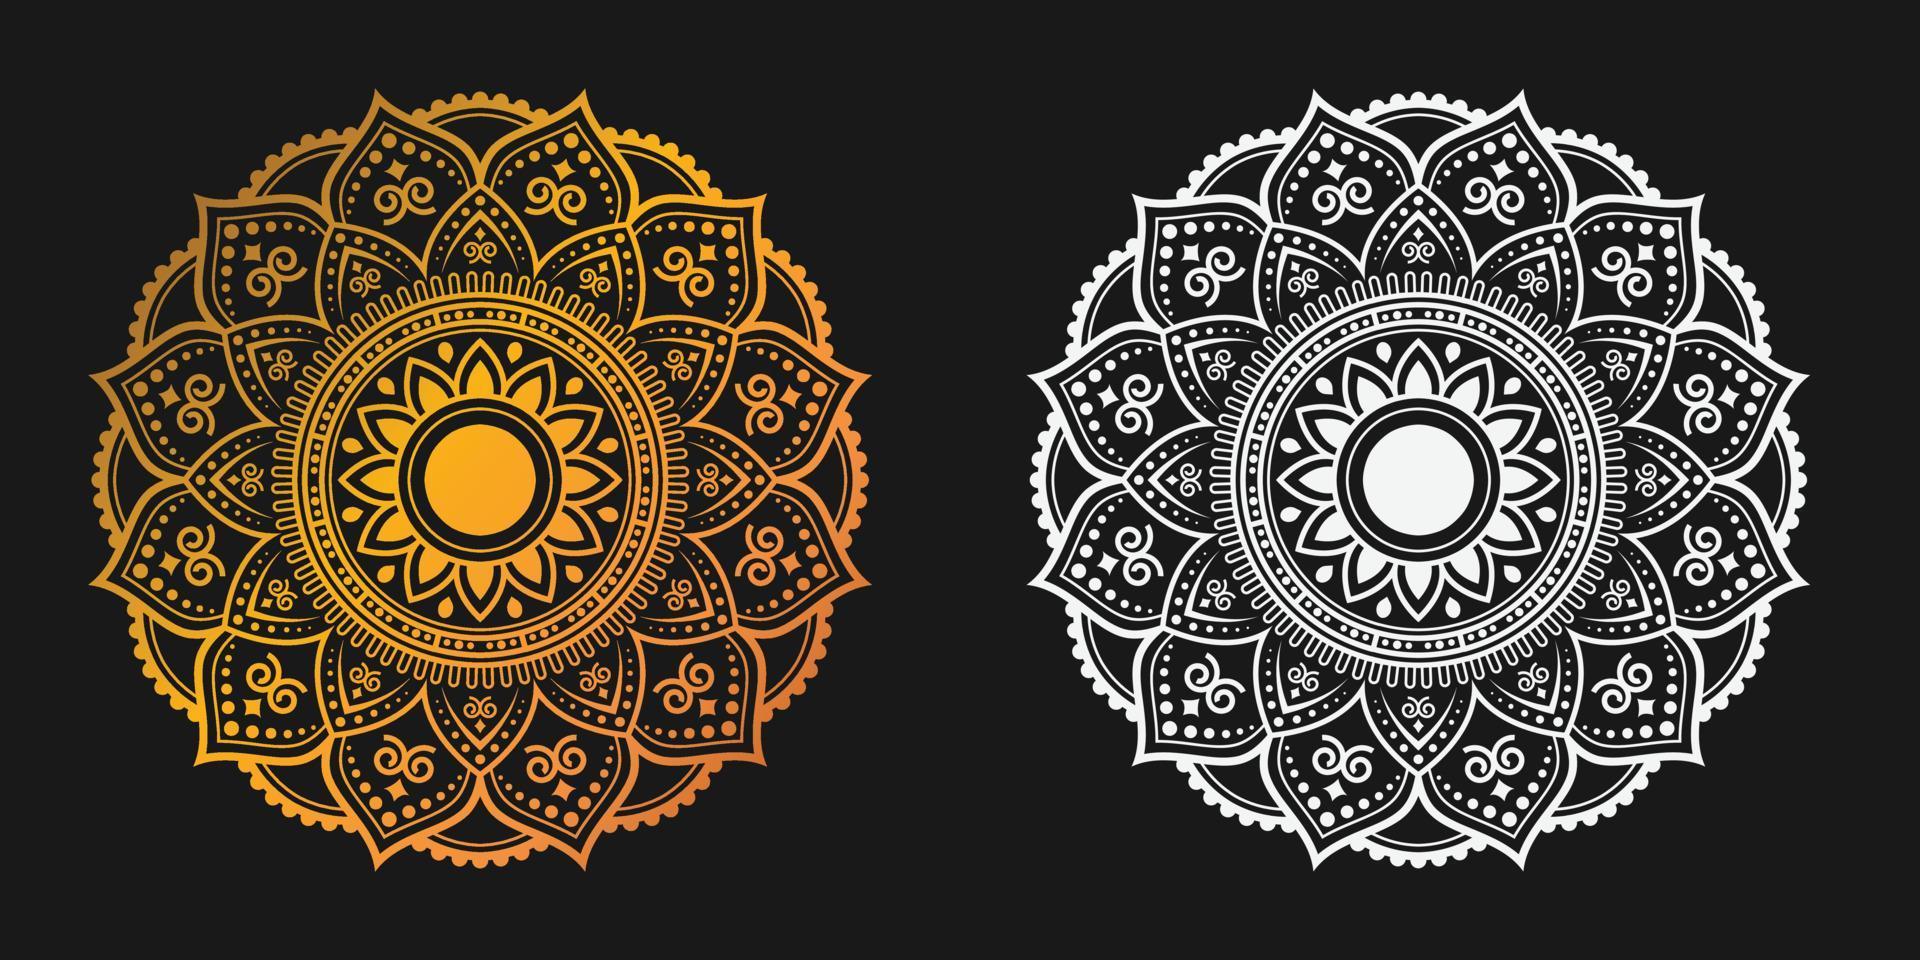 lyxig gyllene prydnadsmandala bakgrund vektor design. dekorativ mandala för tatuering, mehndi, islamiskt mönster, prydnad, konst, henna, indiskt mönster, tryck, affisch, omslag, broschyr, flygblad, banderoll